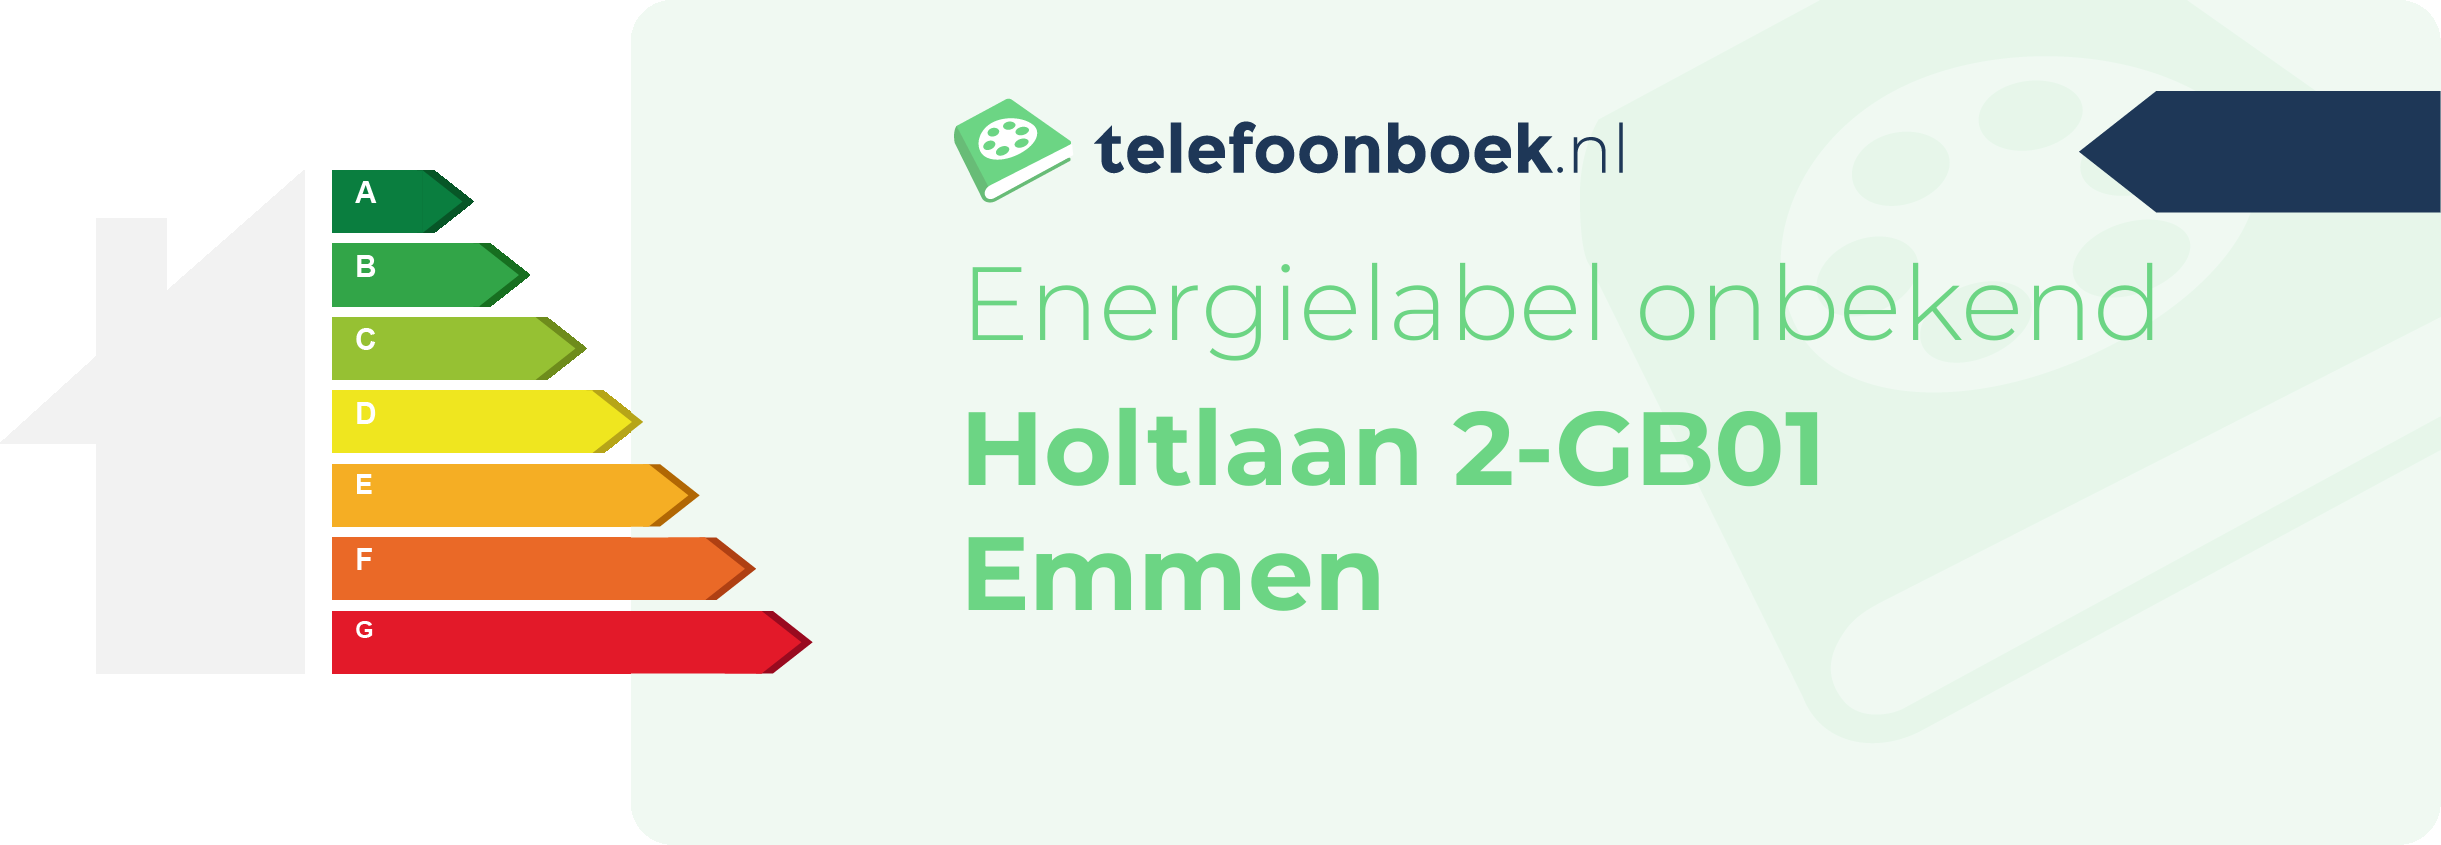 Energielabel Holtlaan 2-GB01 Emmen